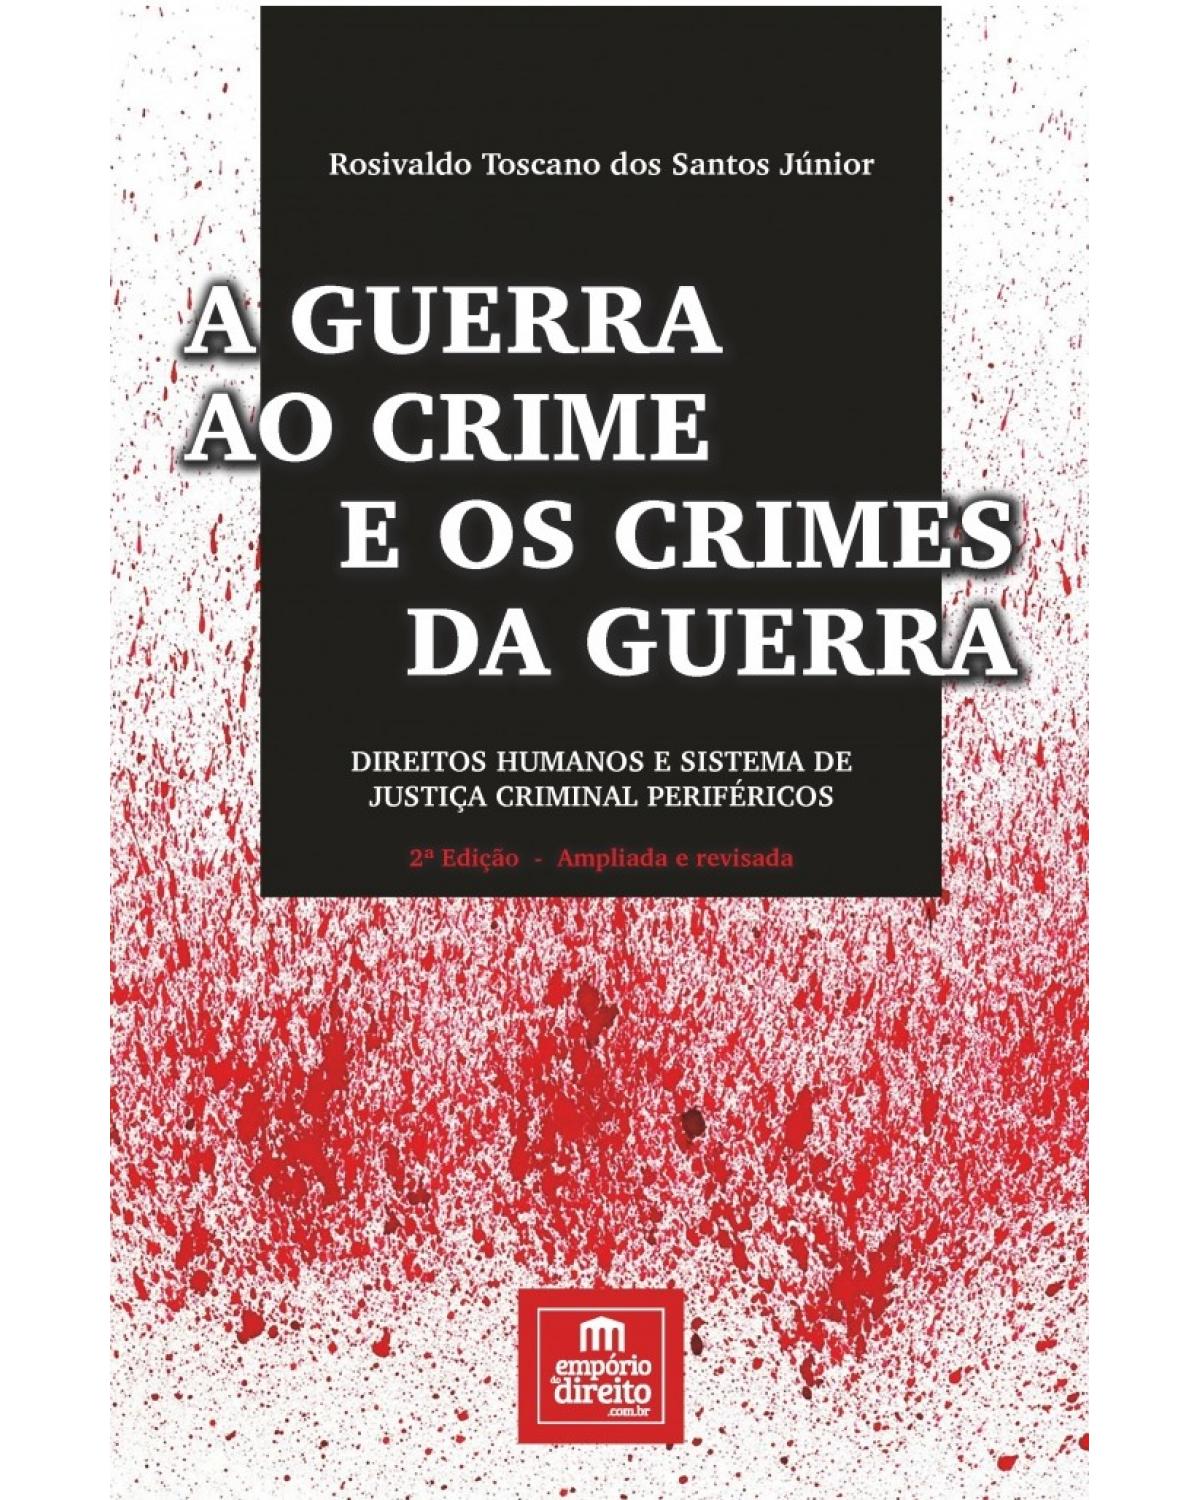 A guerra ao crime e os crimes da guerra - Direitos humanos e sistema de justiça criminal periféricos - 2ª Edição | 2017